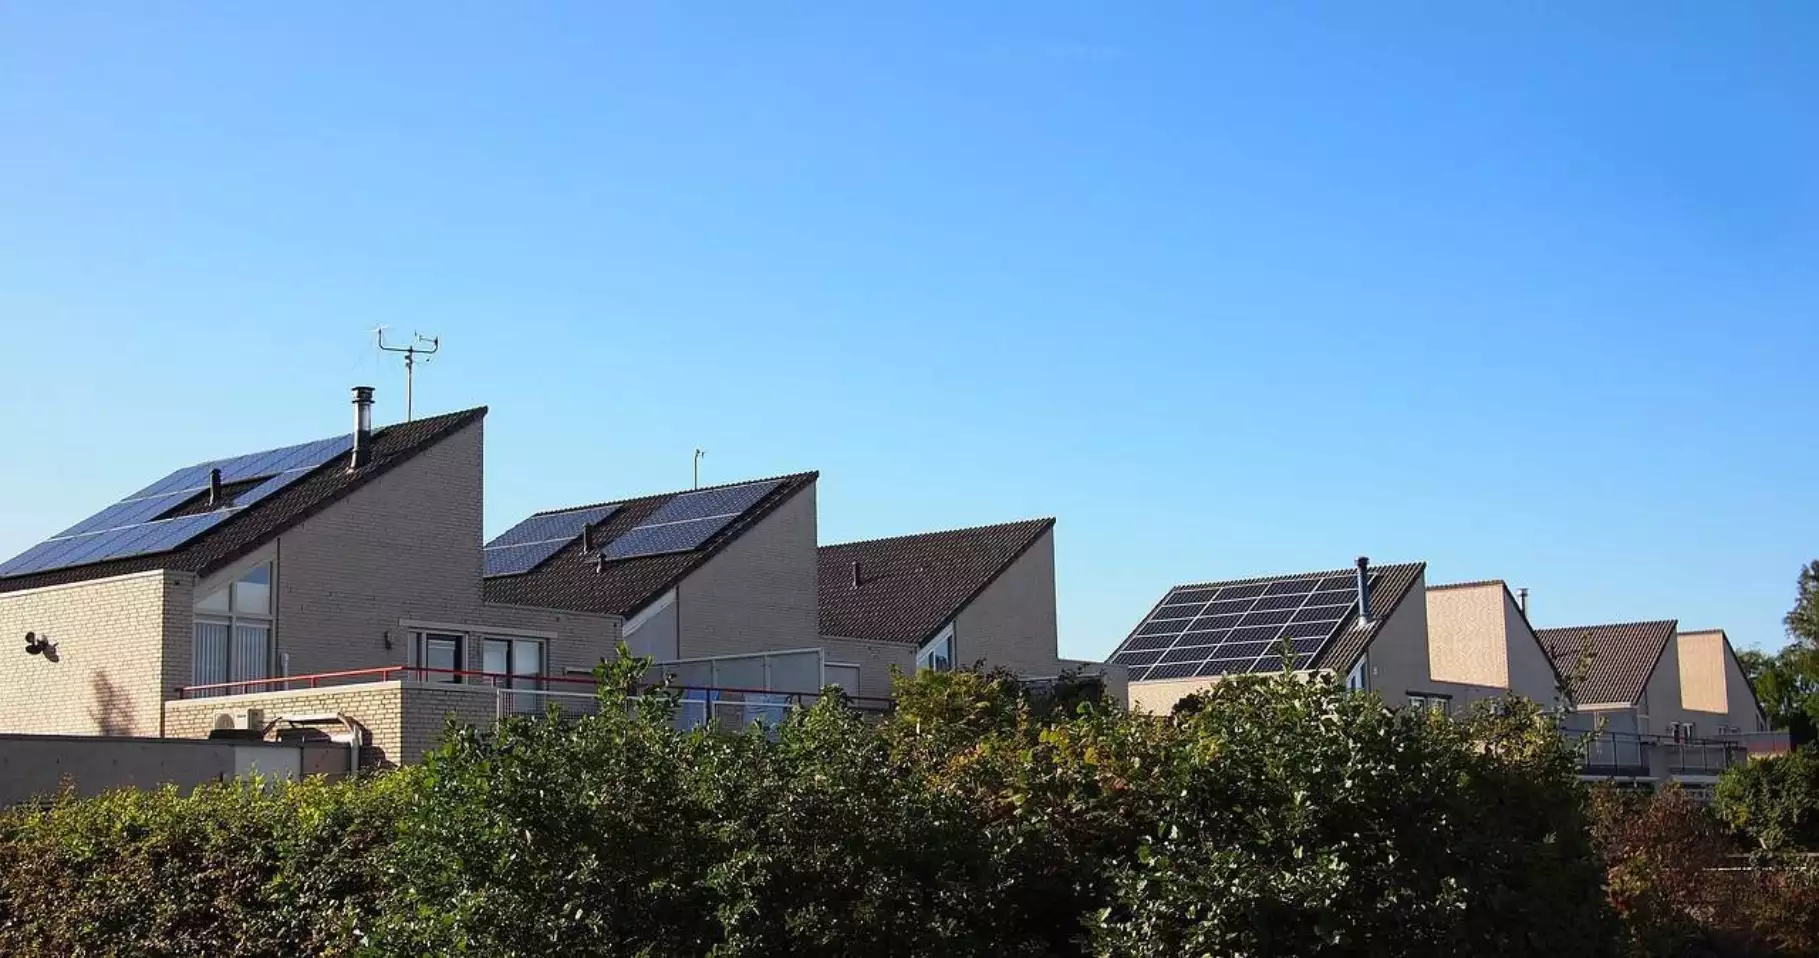 Huizen met zonnepanelen op dak